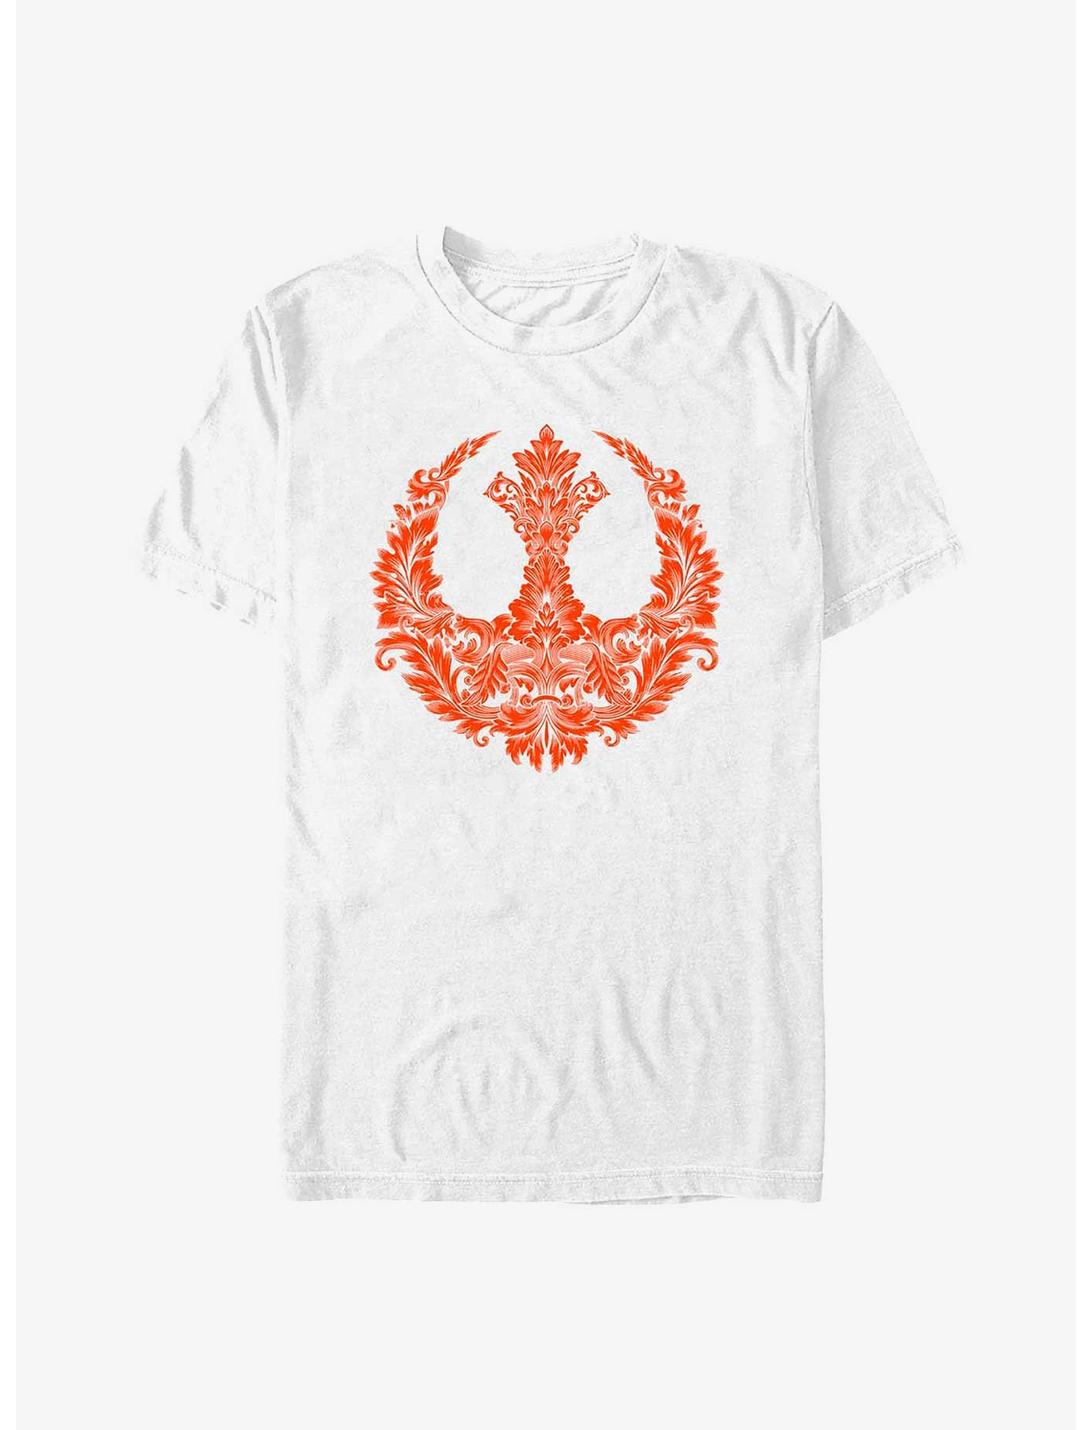 Star Wars Rebel Floral Symbol T-Shirt, WHITE, hi-res